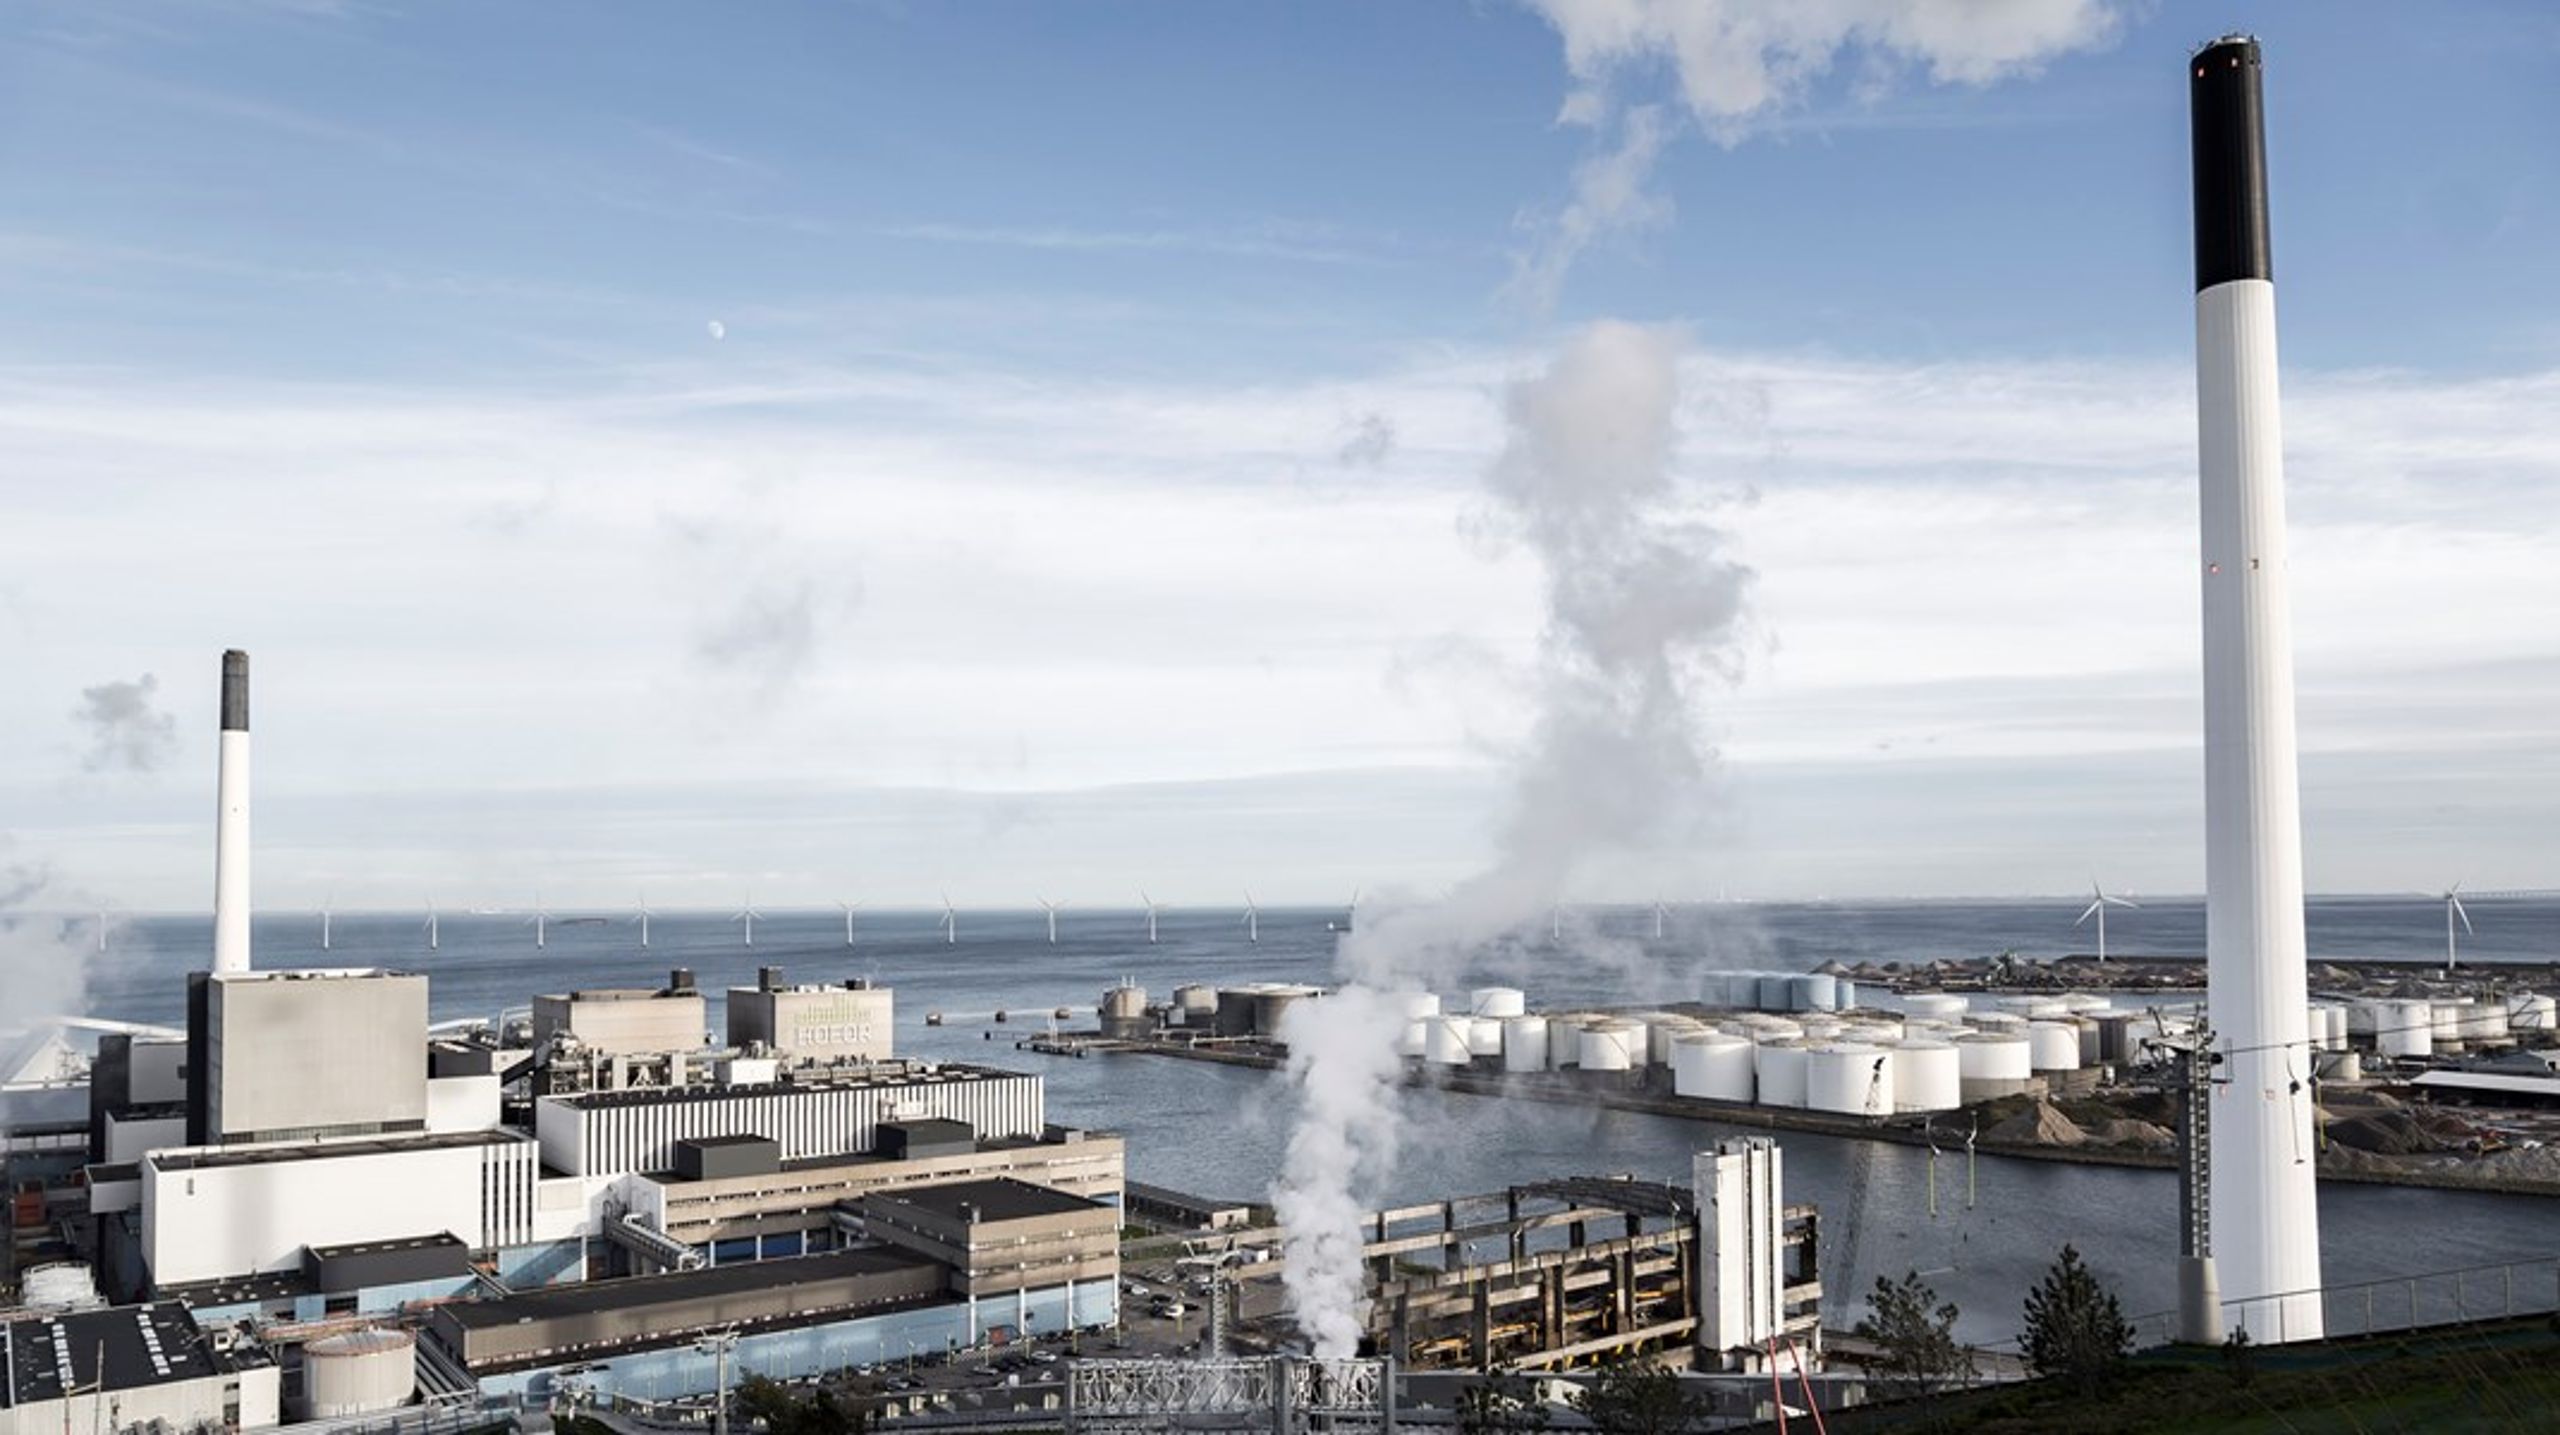 Amagerværket leverer fjernvarme til det københavnske fjernvarmenet.&nbsp;”Hvis vi skal give borgerne sikkerhed om fjernvarmen, har vi selv brug for sikkerhed om affaldsforbrændingen,”&nbsp;skriver 62 borgmestre i et åbent brev til regeringen.